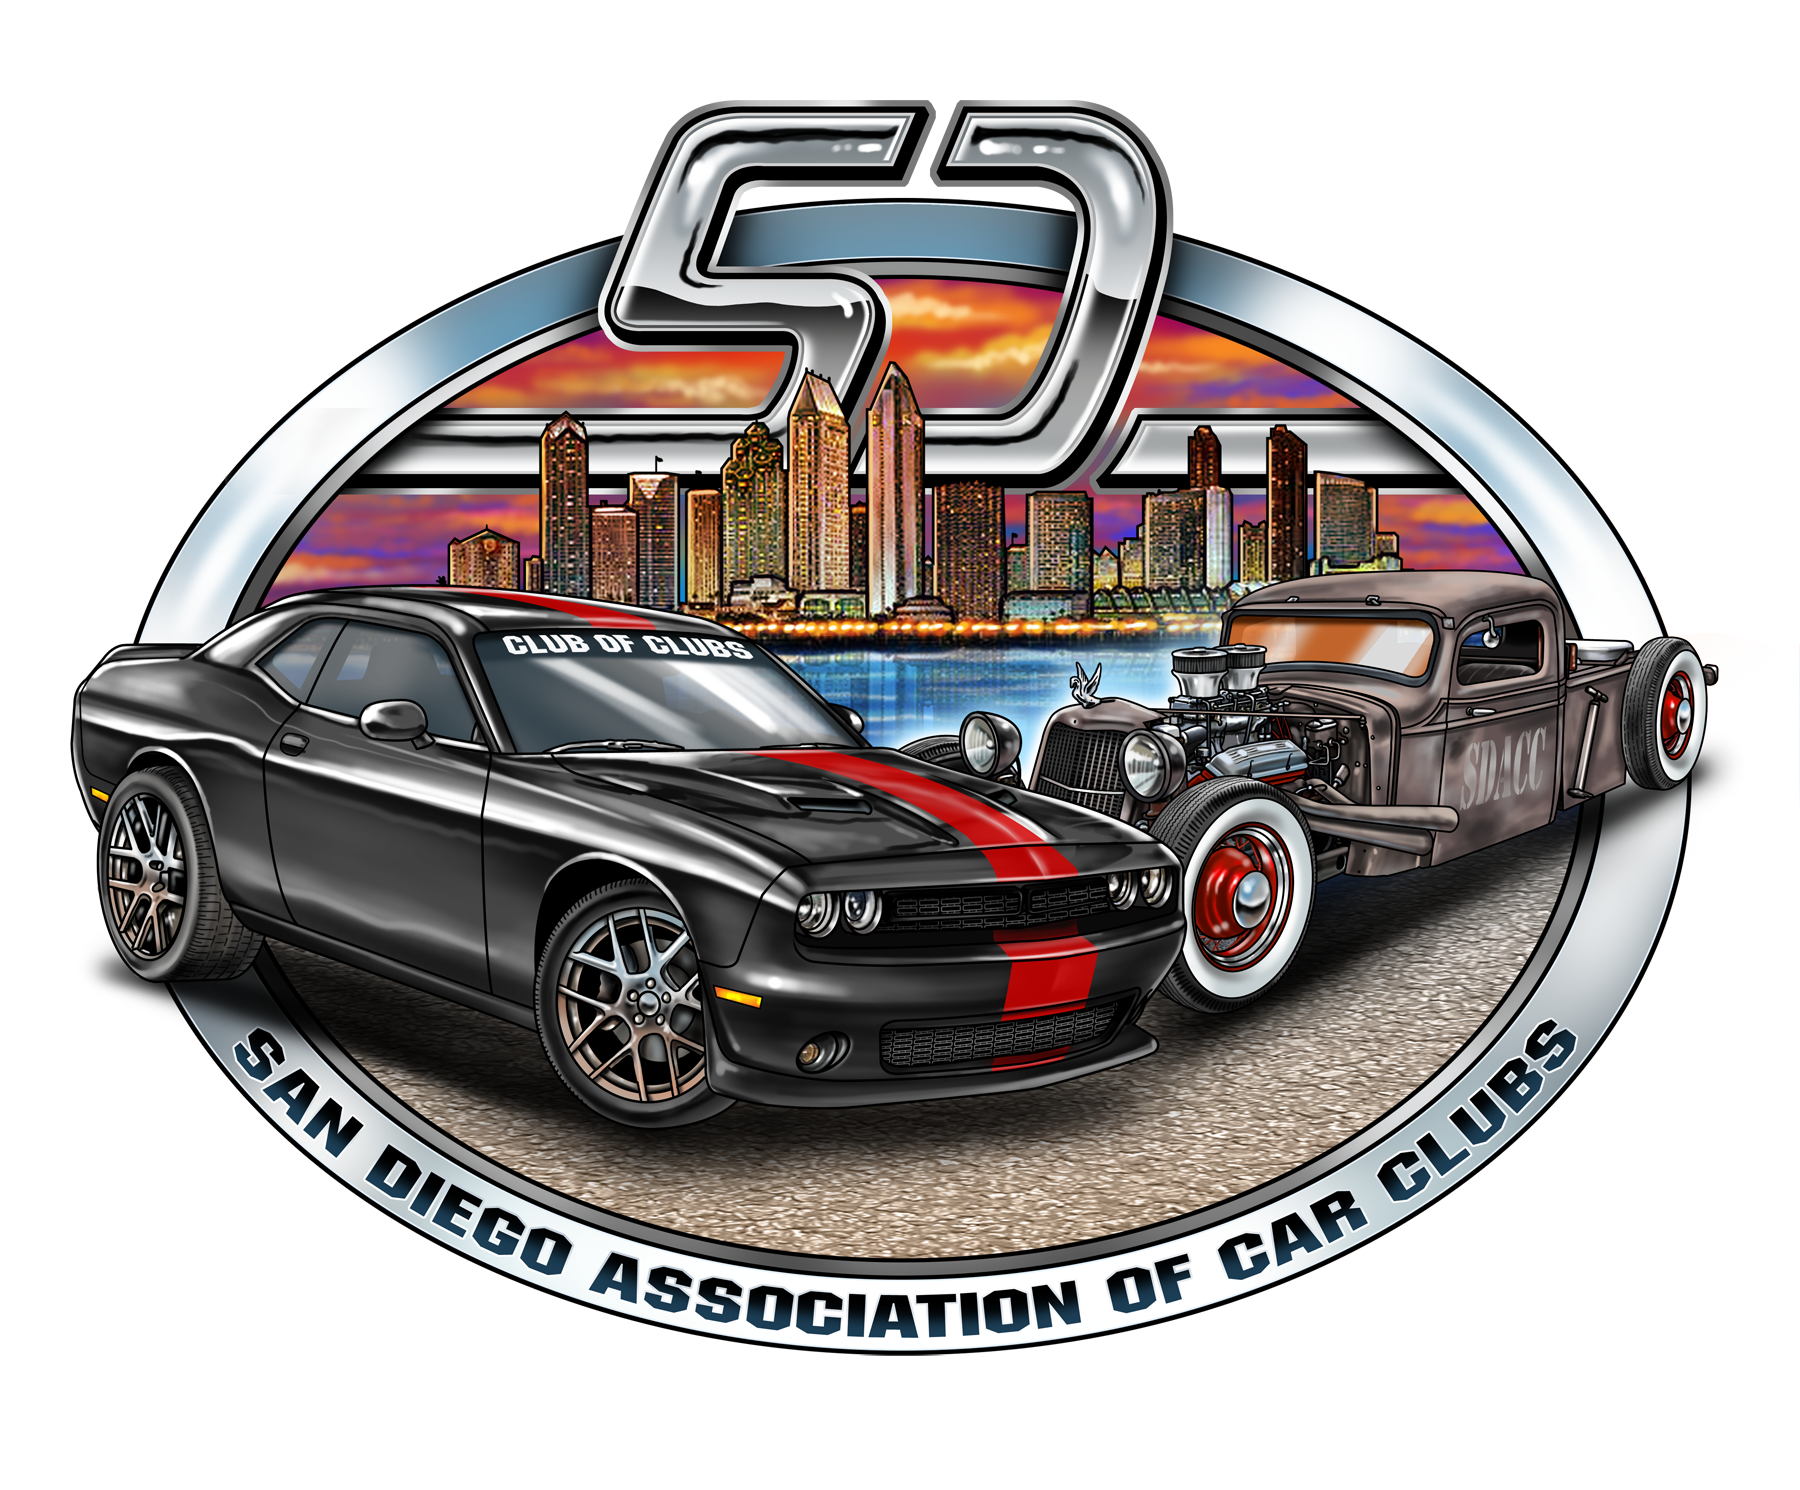 San Diego Association of Car Clubs